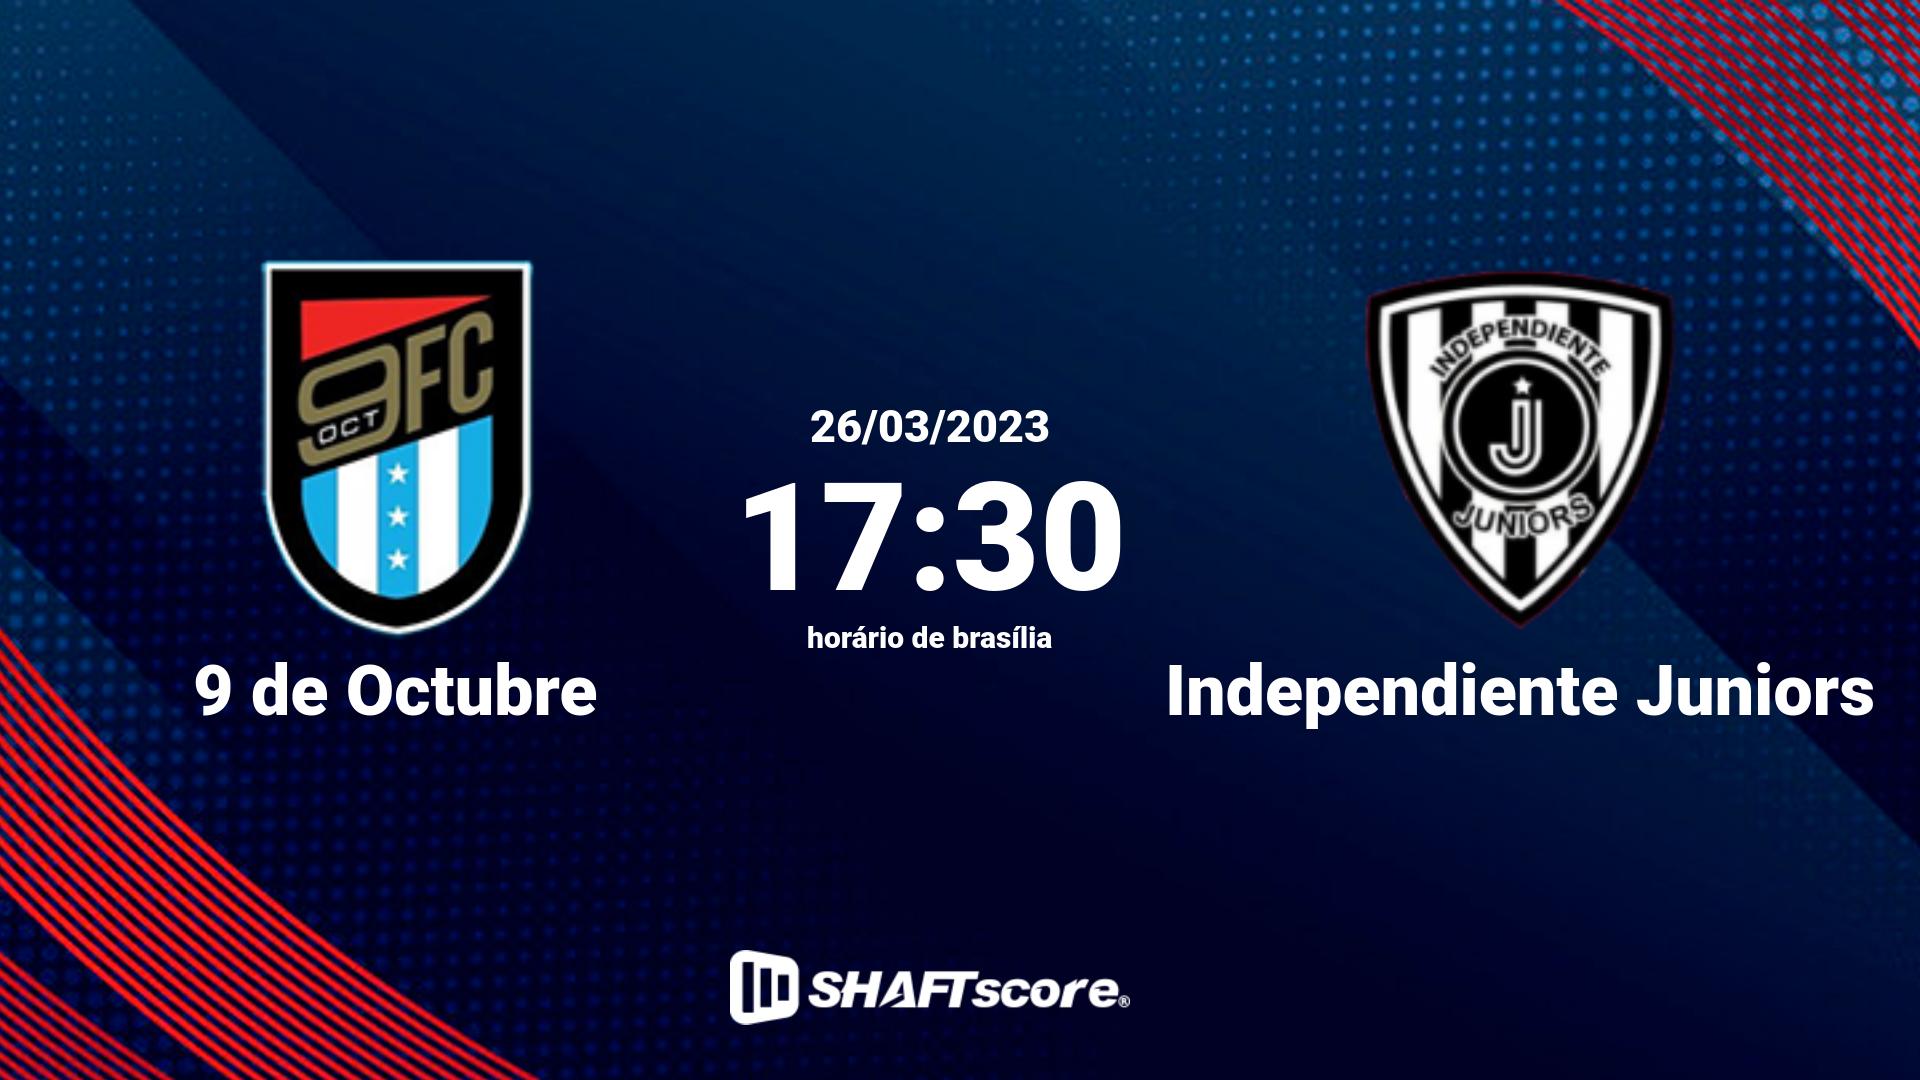 Estatísticas do jogo 9 de Octubre vs Independiente Juniors 26.03 17:30